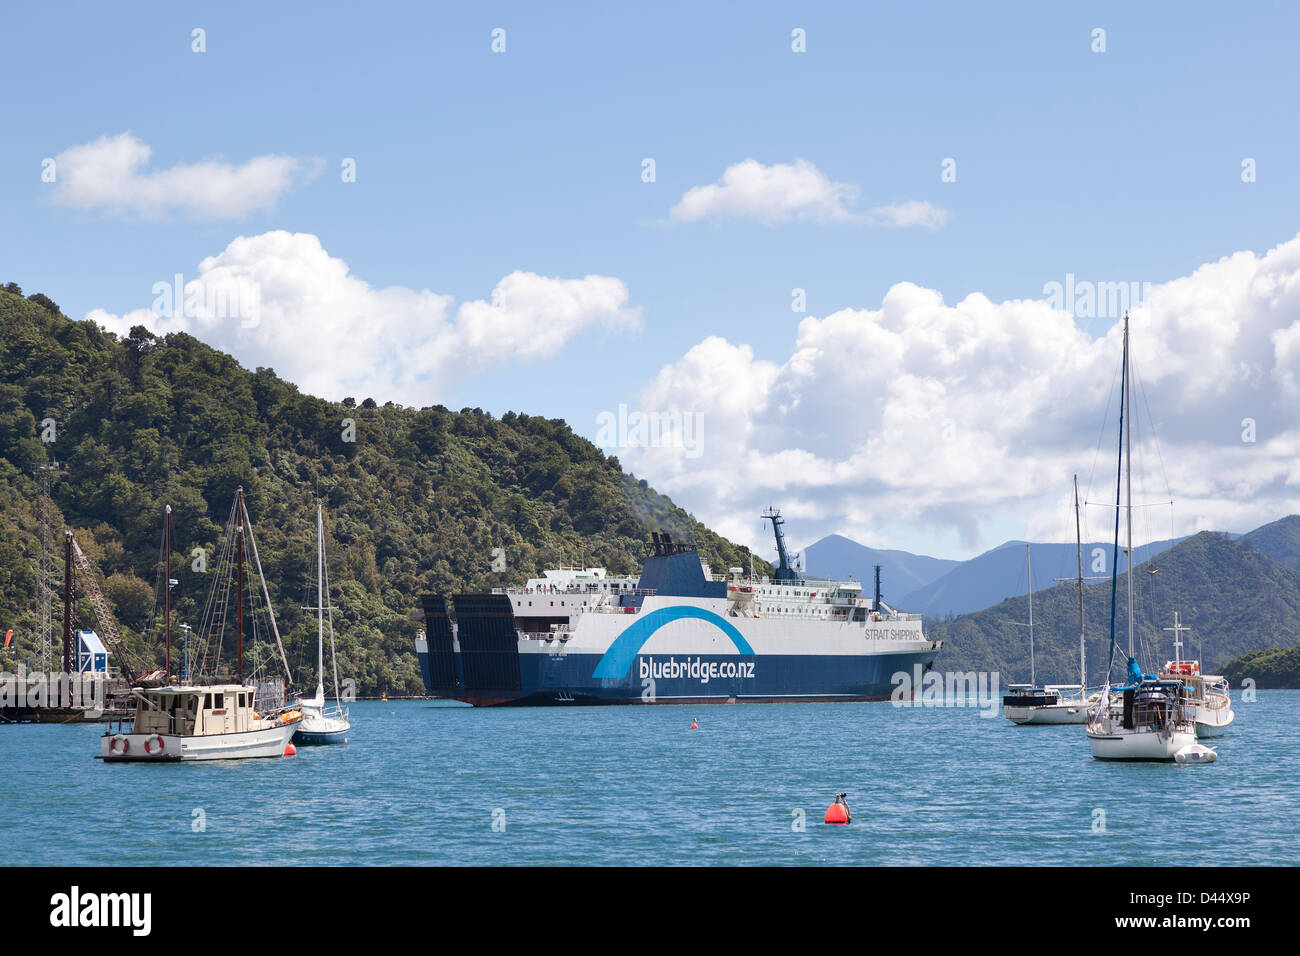 Hafen von Picton mit der Bluebridge Fähre Stockfoto